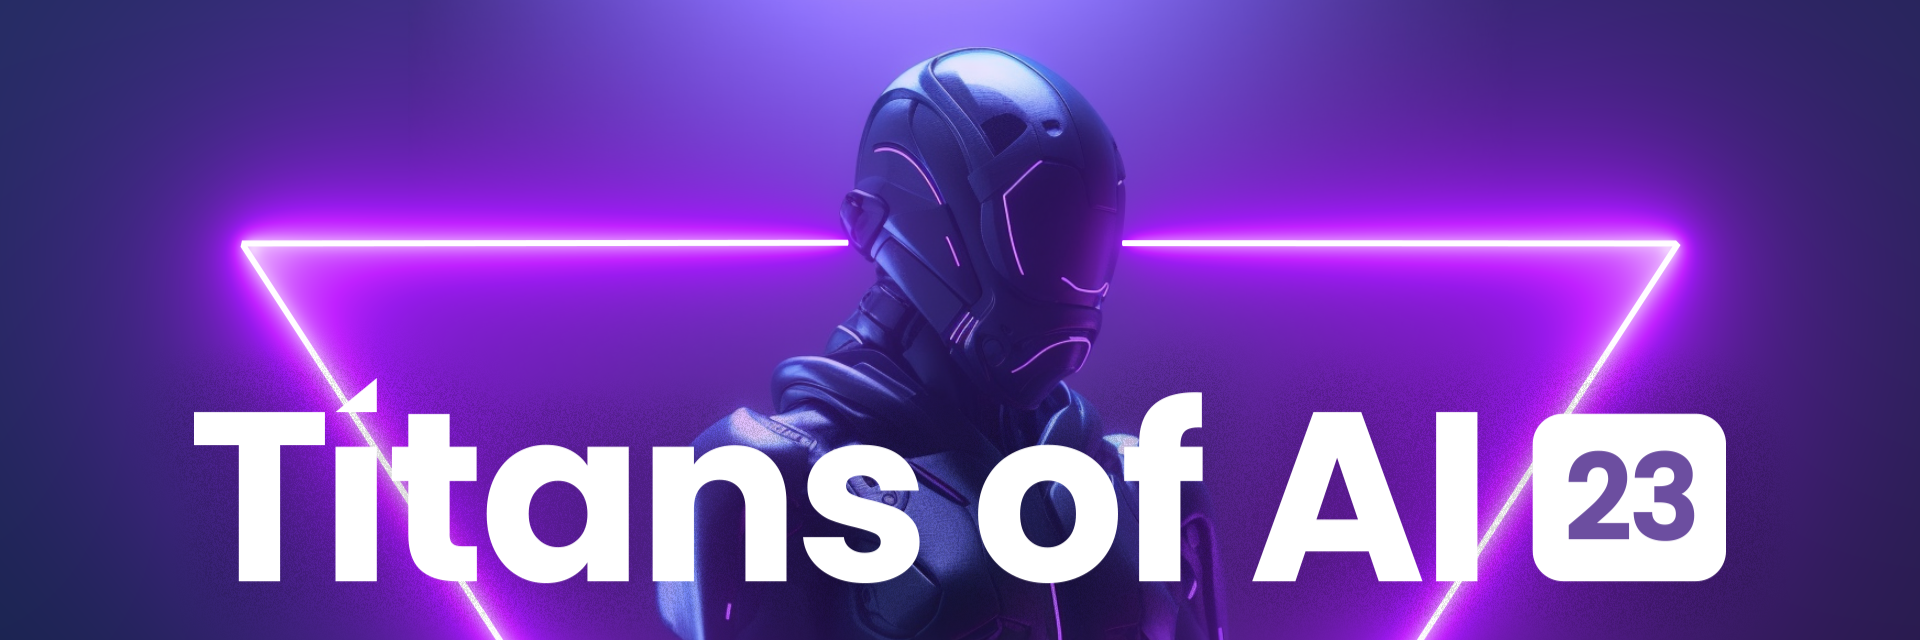 Titans of AI | Dallas